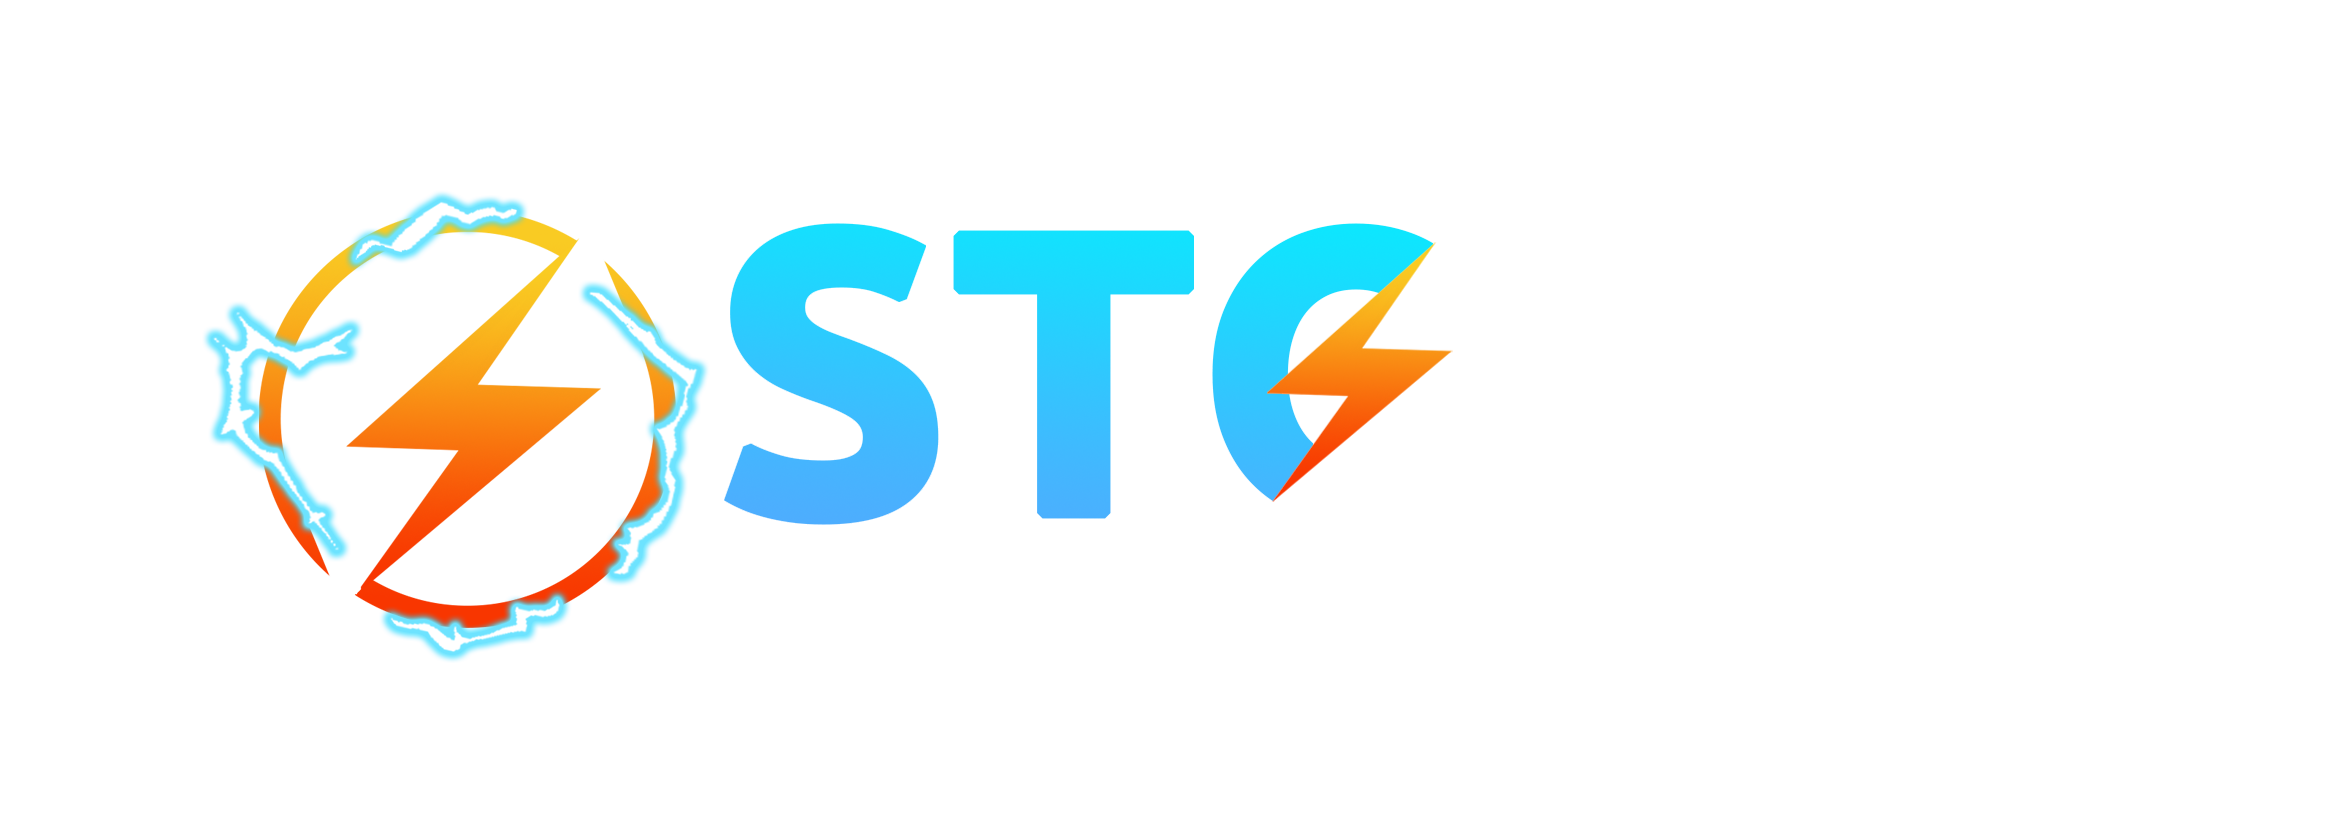 Storm Server Hosting